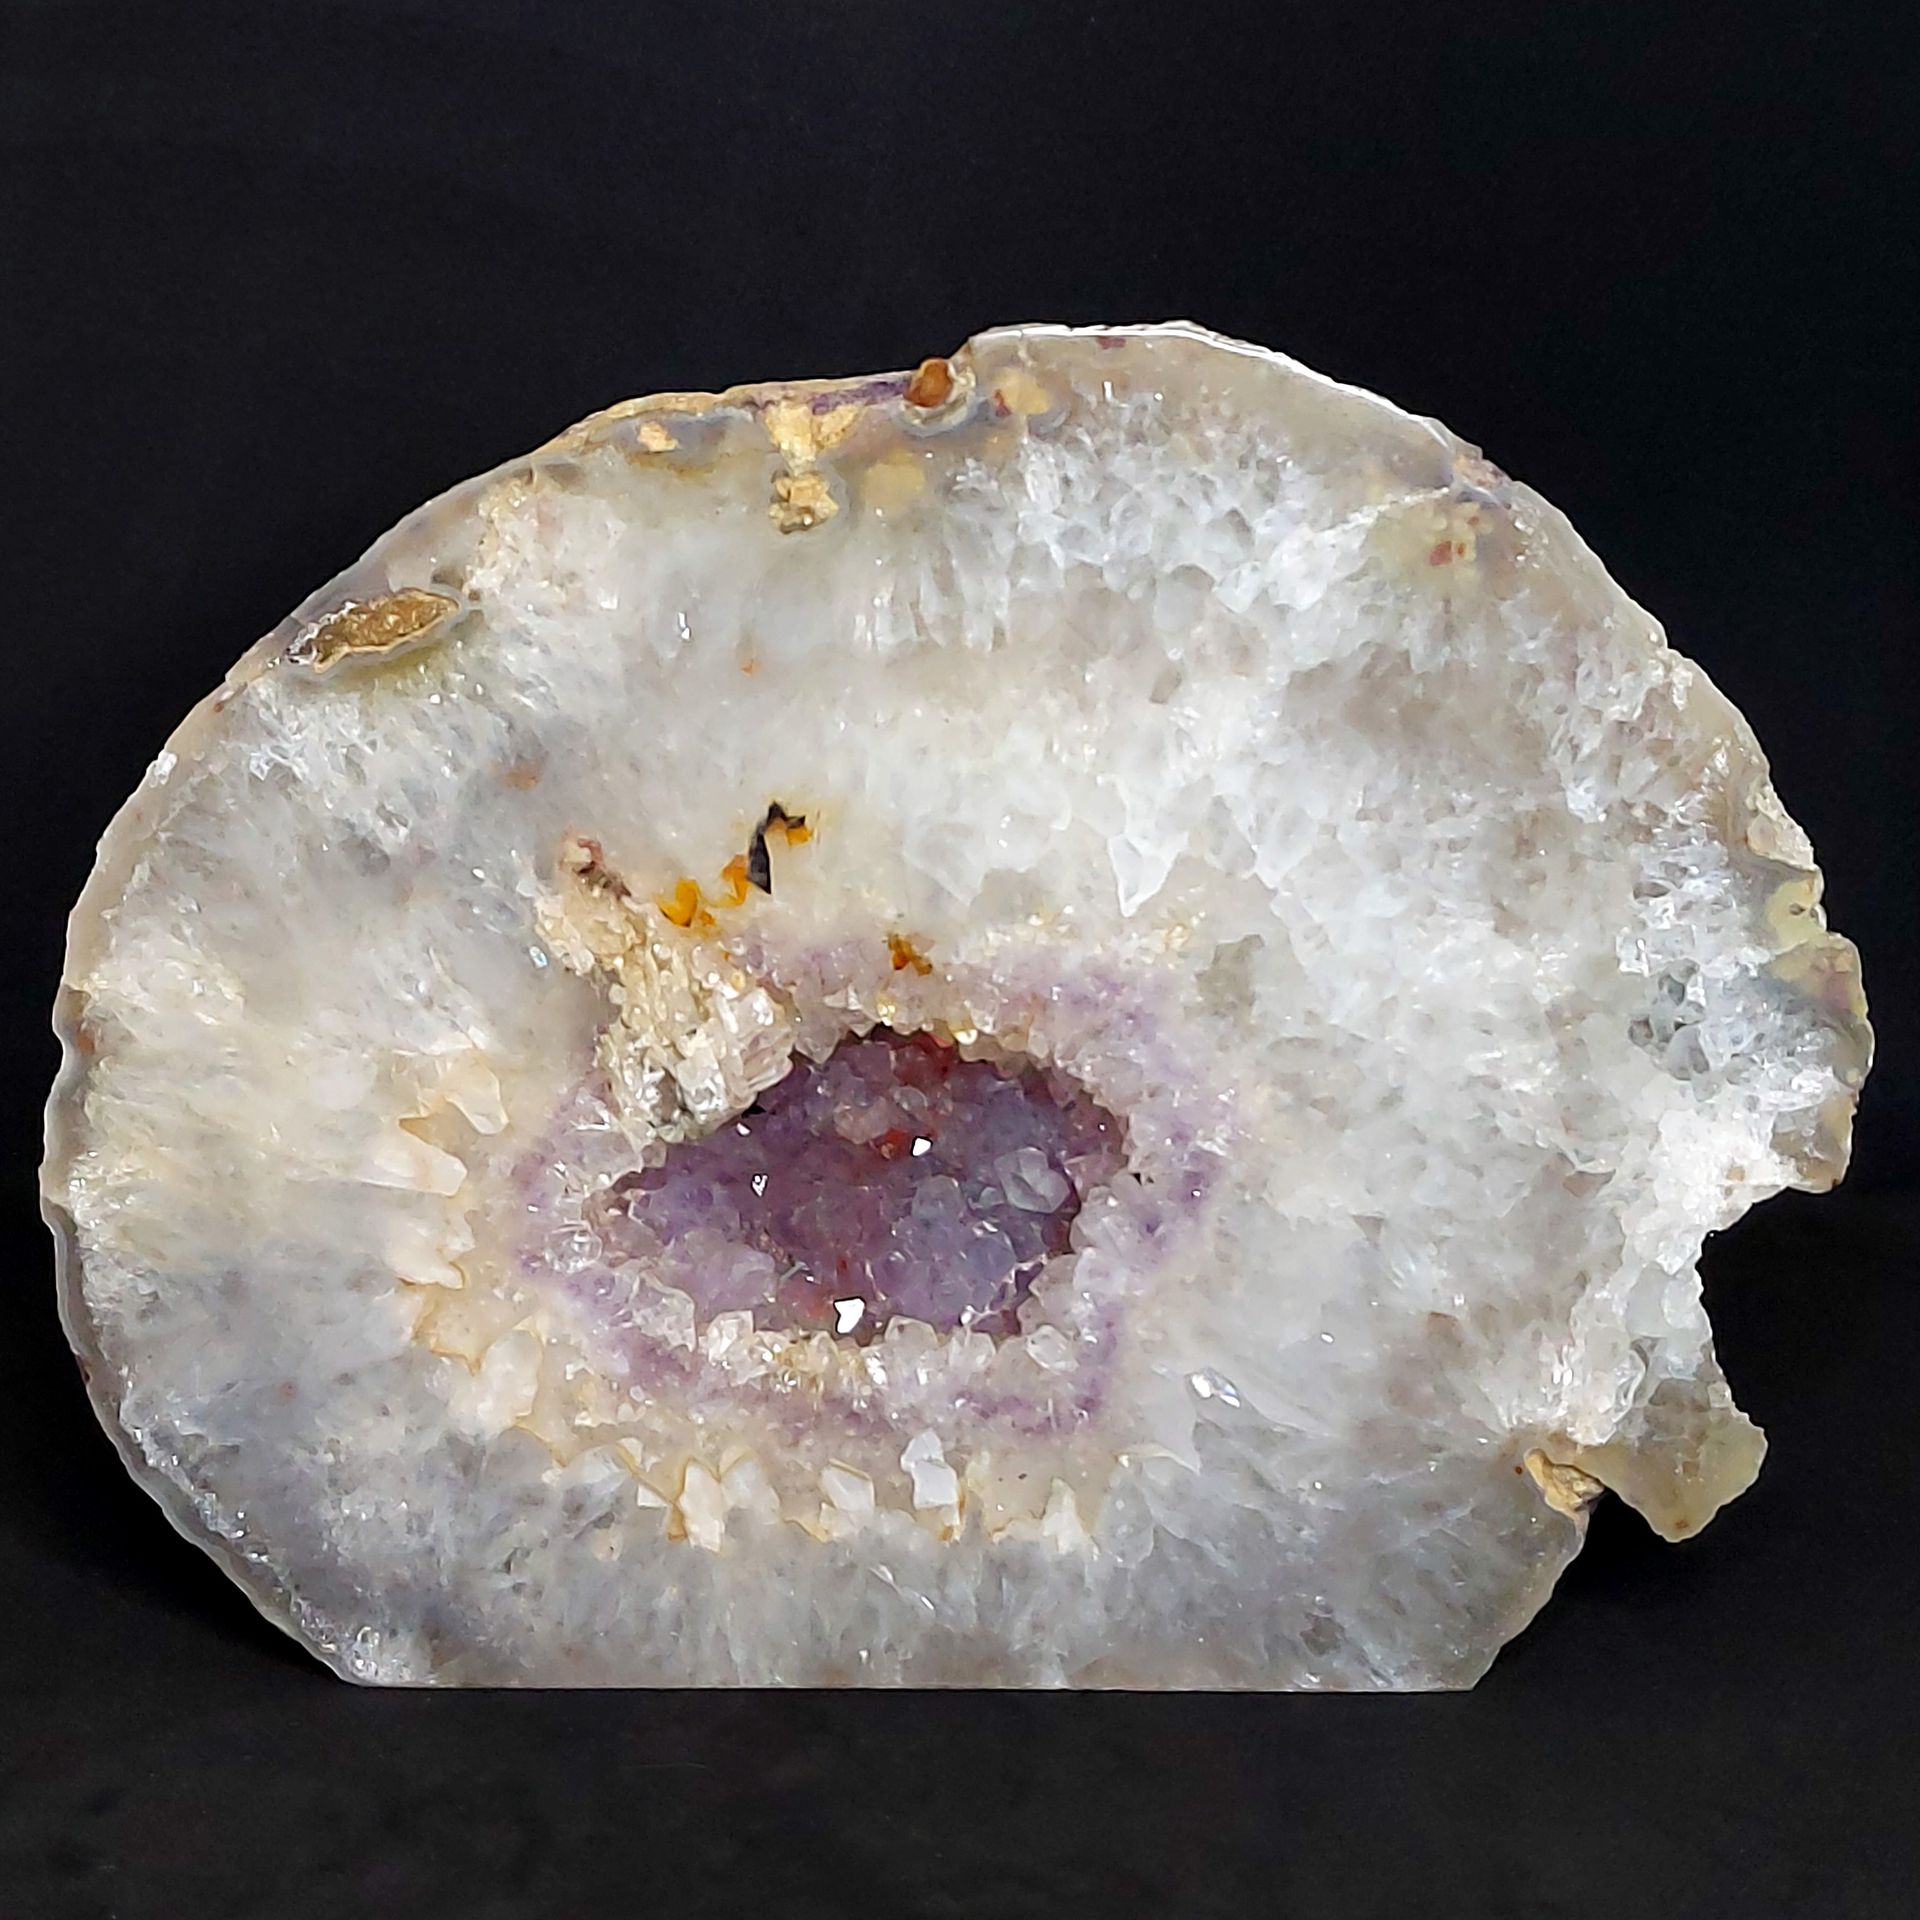 AMETHYSTE - Brésil - 4113 gr 紫晶圆锥体，周围是美丽的半透明石英 - 产自巴西 - 紫晶为紫色，石英为灰蓝色至白色 - 极好的 - &hellip;